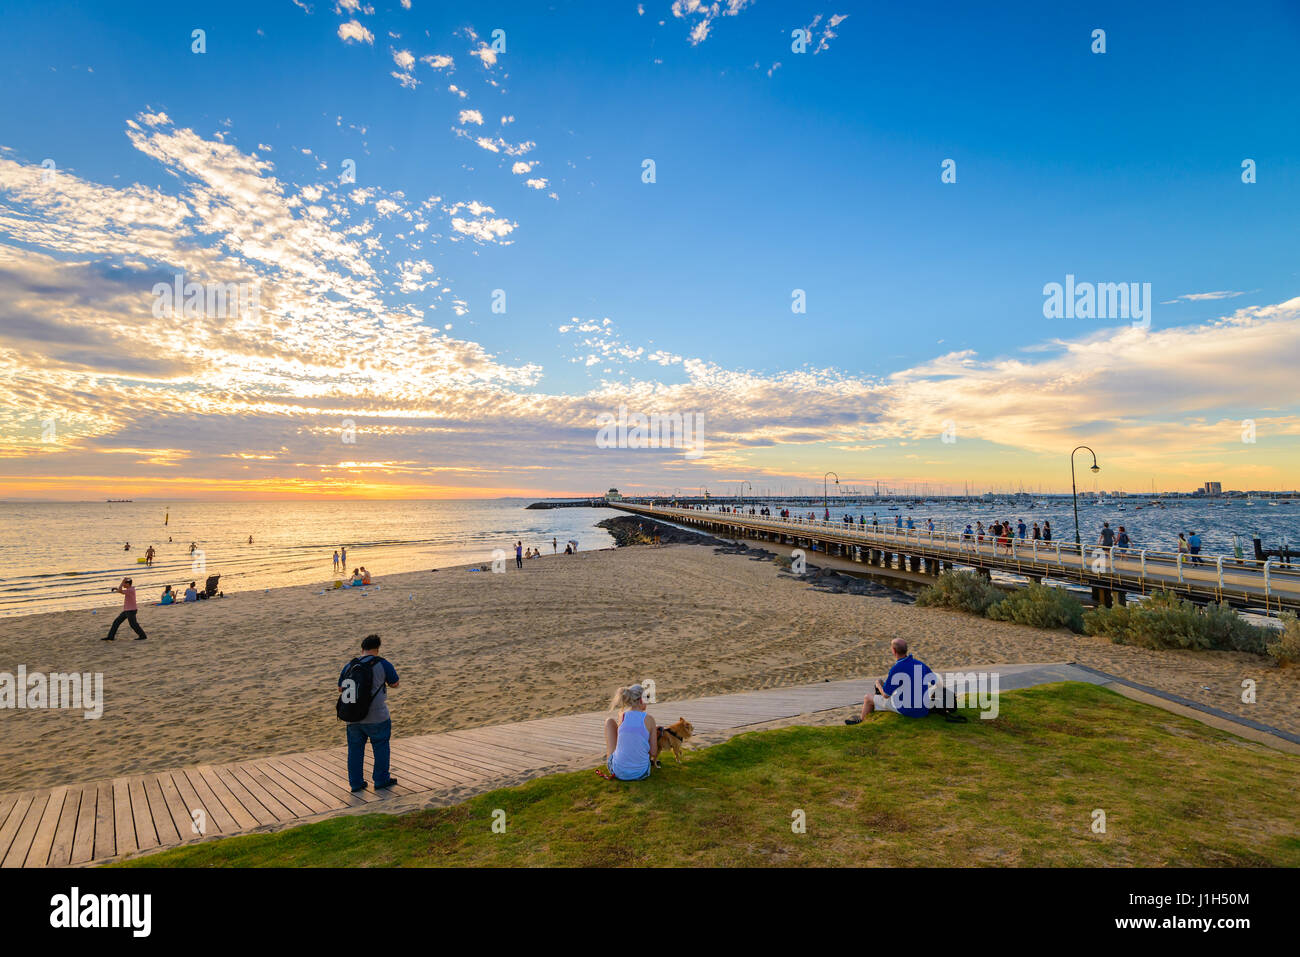 Melbourne, Australie - 28 décembre 2016 : Les gens de passer du temps sur la plage de St Kilda au coucher du soleil sur une chaude journée d'été, Victoria, Australie Banque D'Images